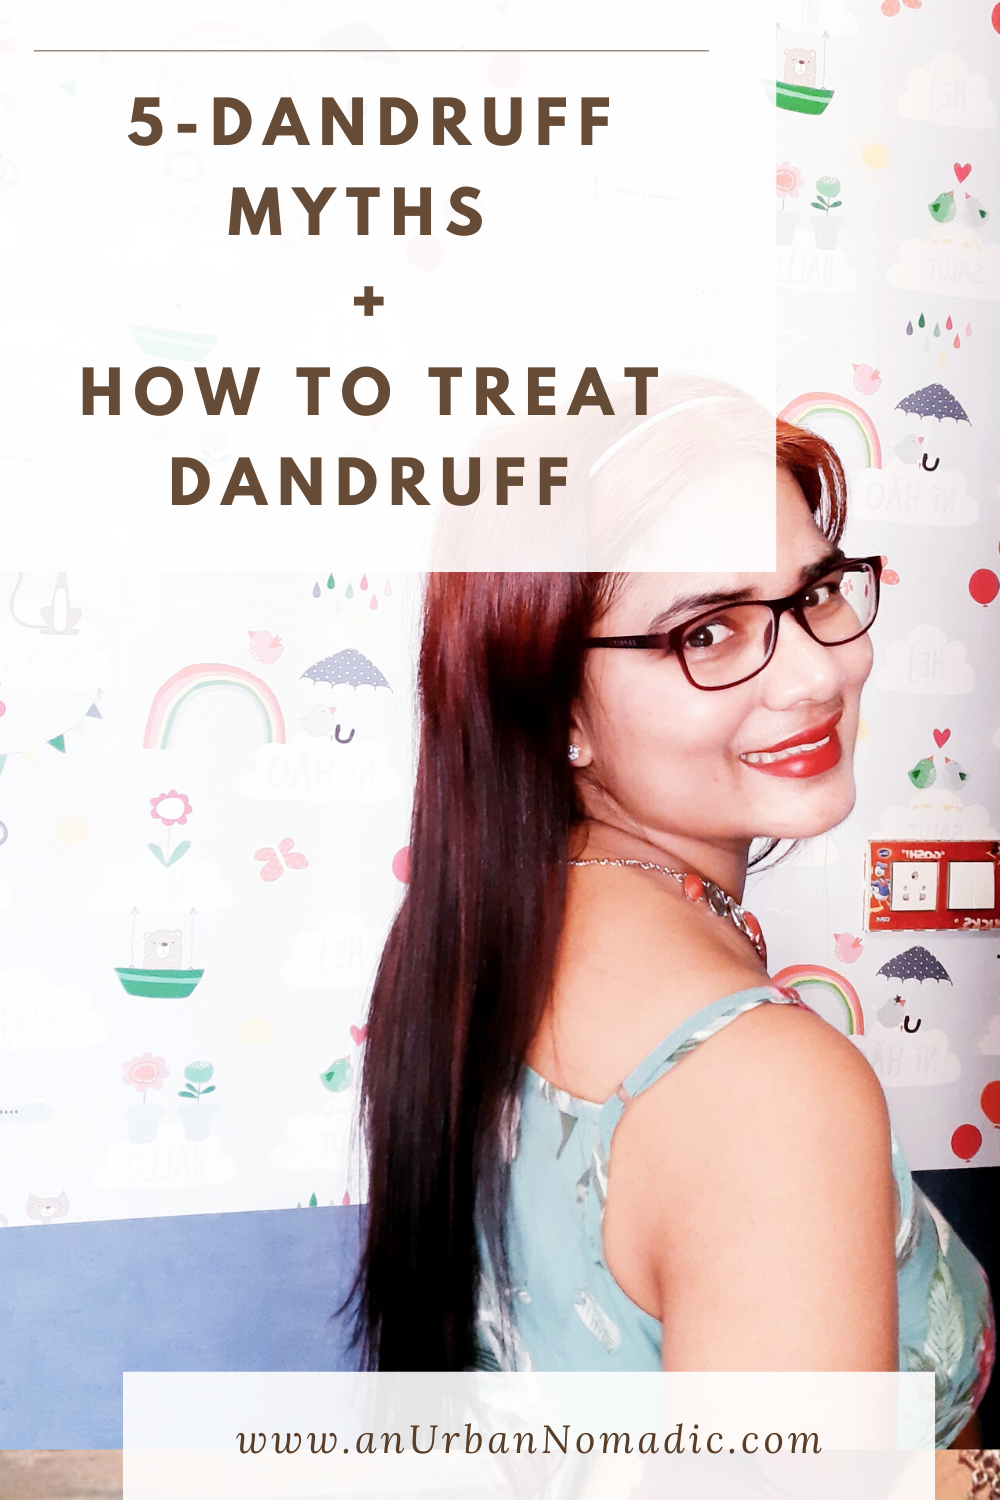 How do I TREAT Dandruff